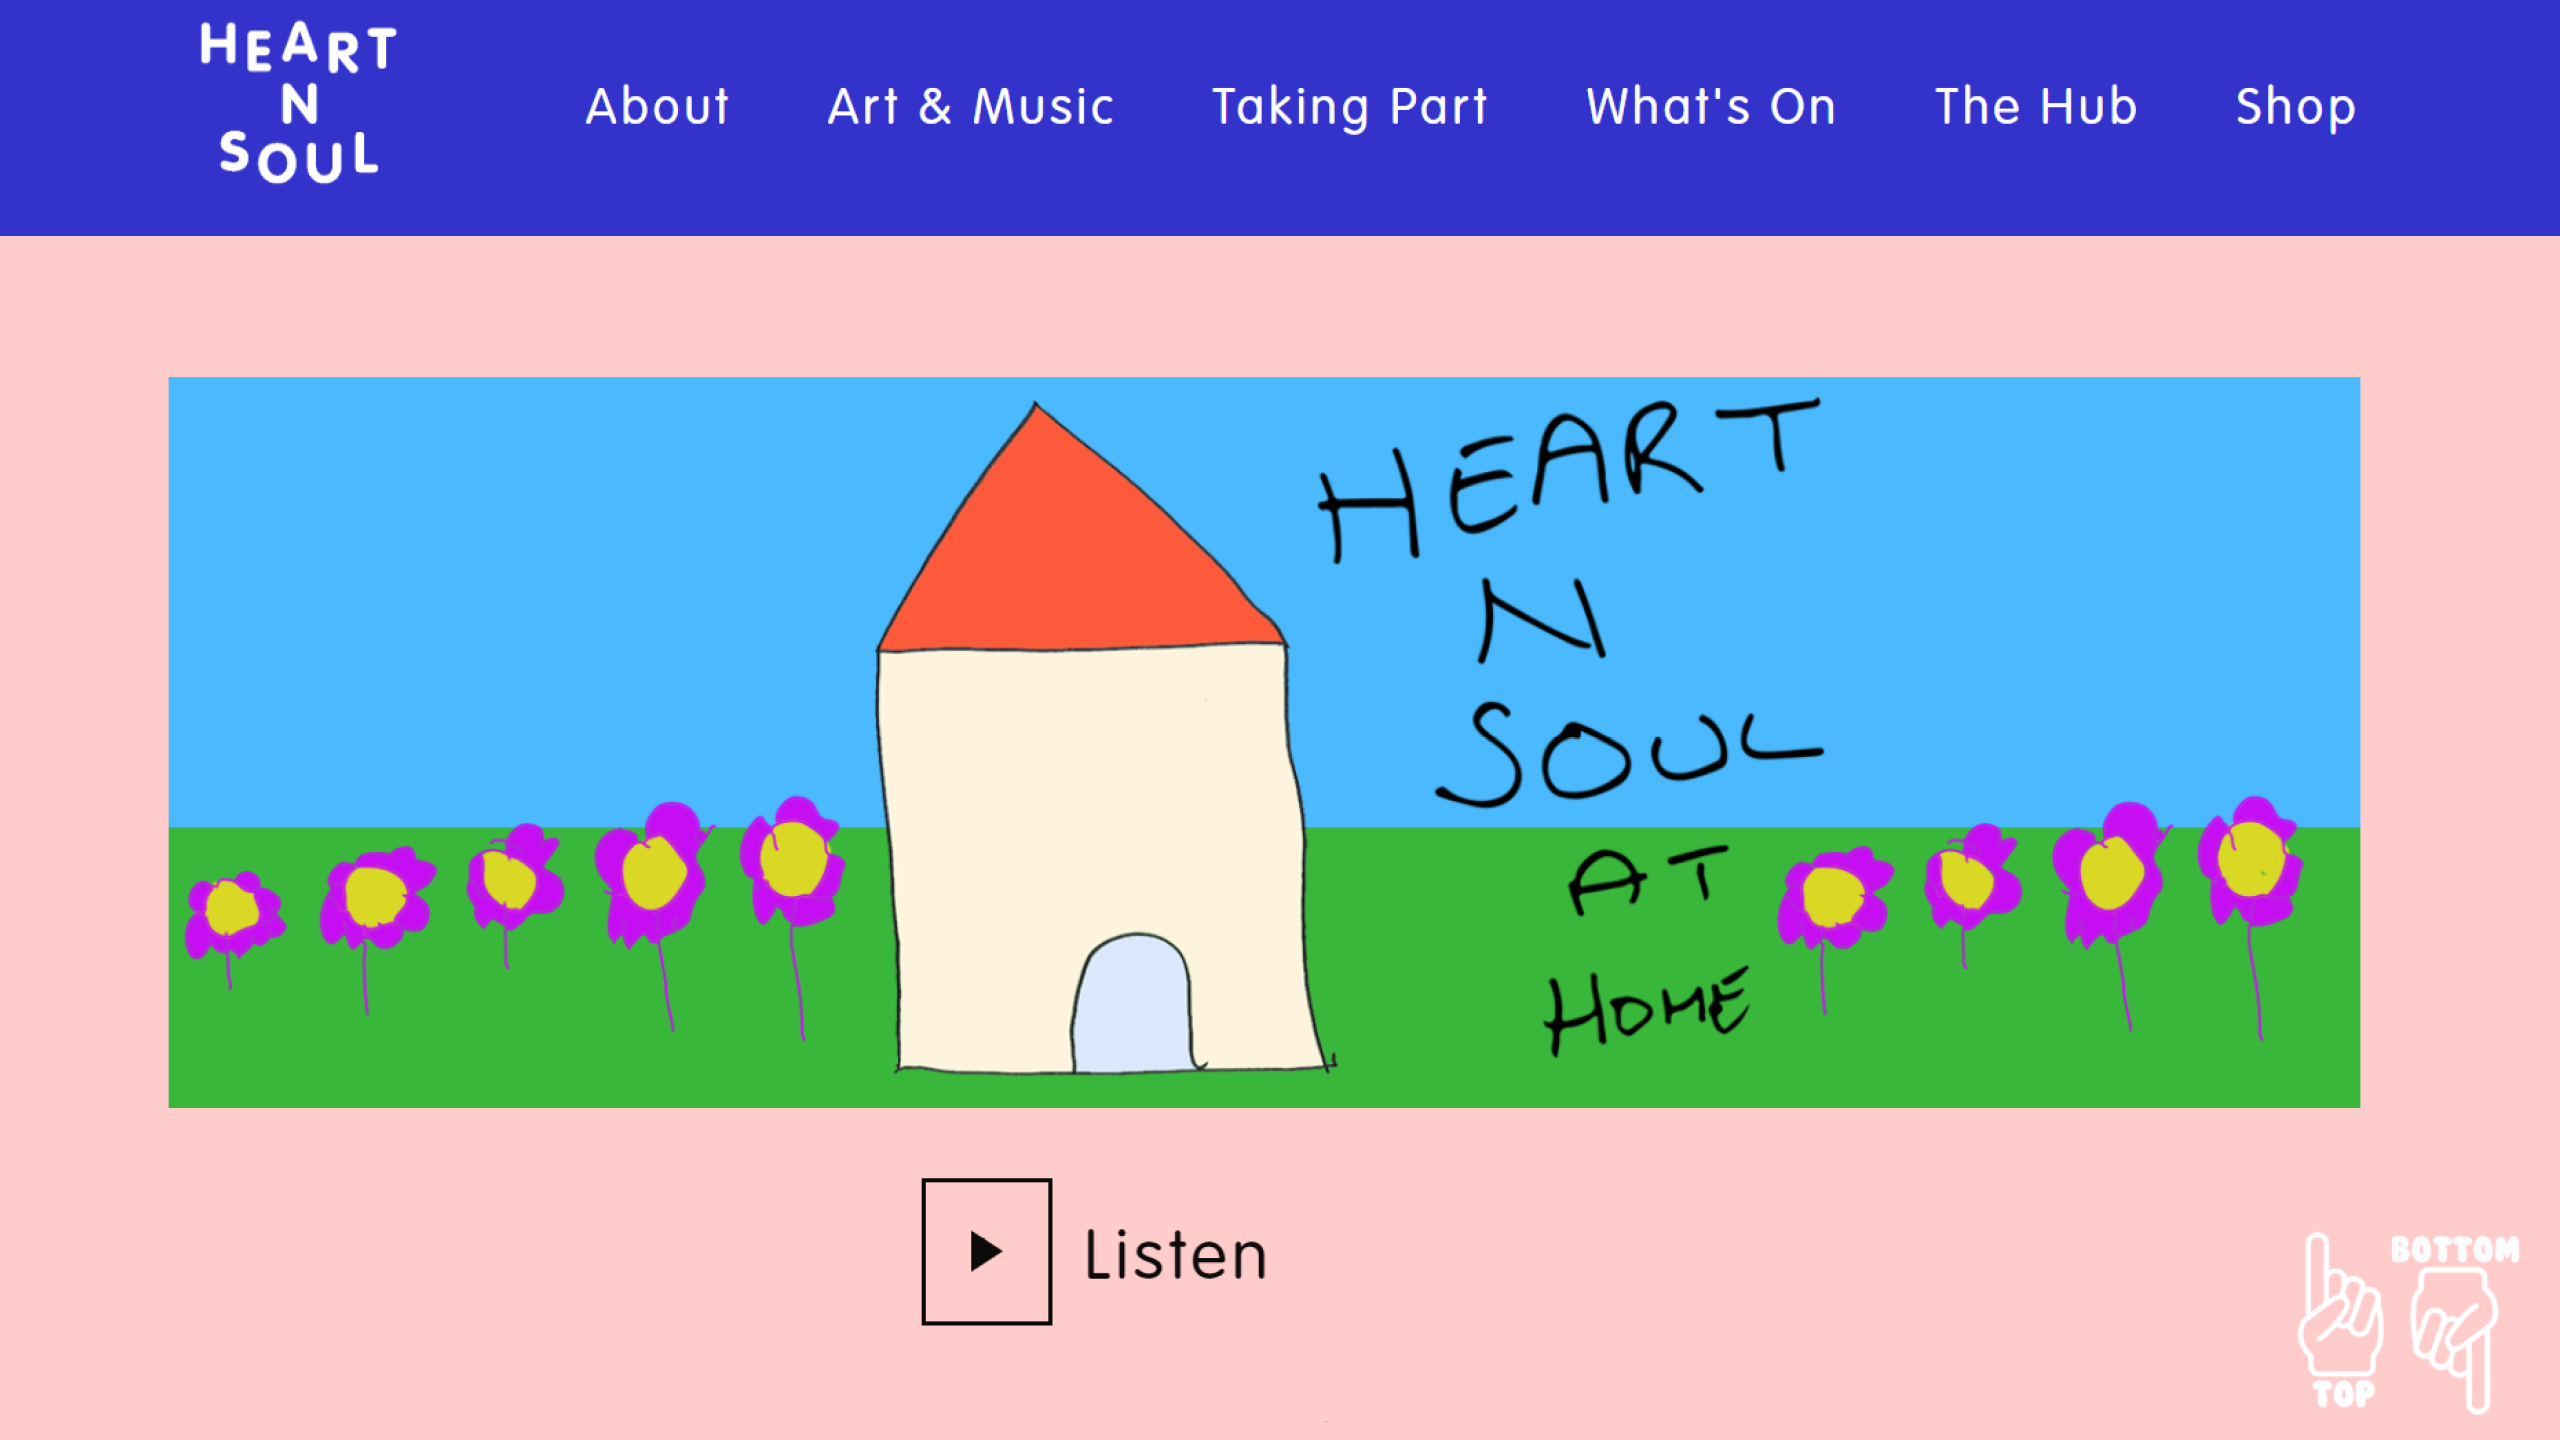 Скриншот сайта с адаптивным дизайном организации heart n soul, работающей в основном с людьми с особенностями развития.